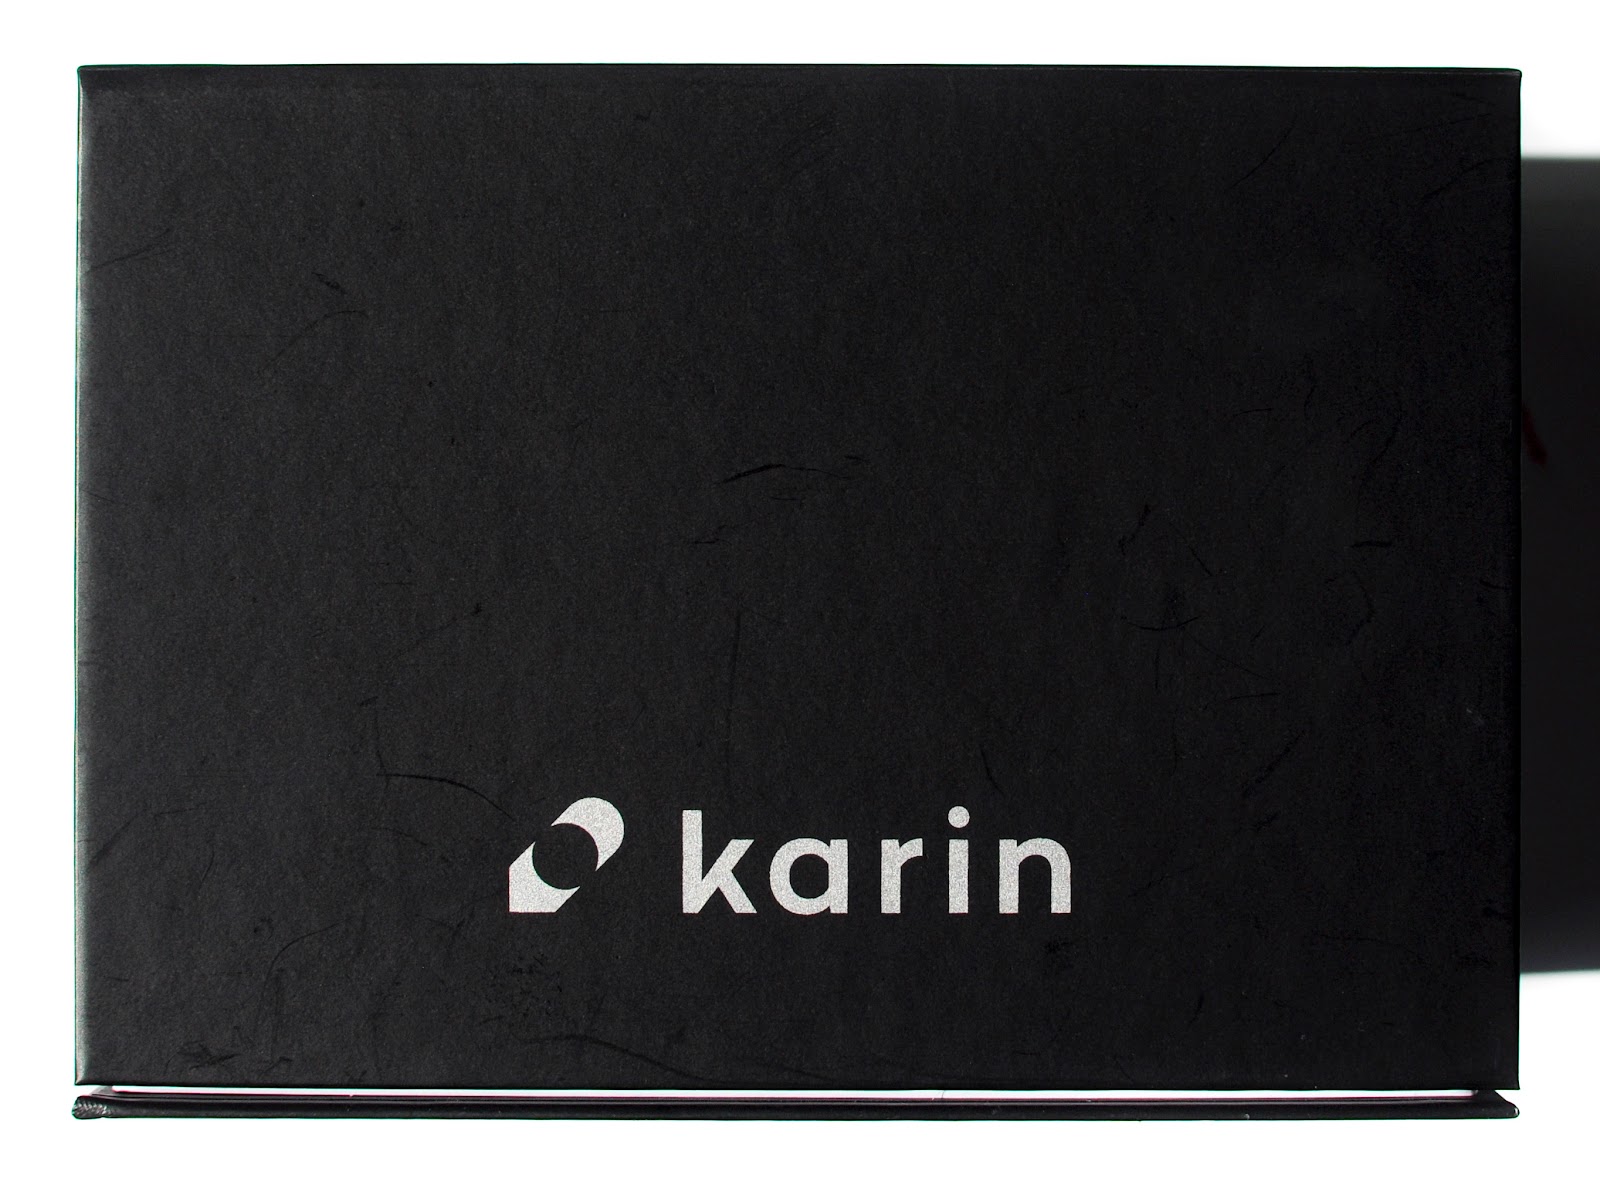 NEW Karin Brushmarker Pro Mega Box - Set of 60 Colors + 3 Blenders